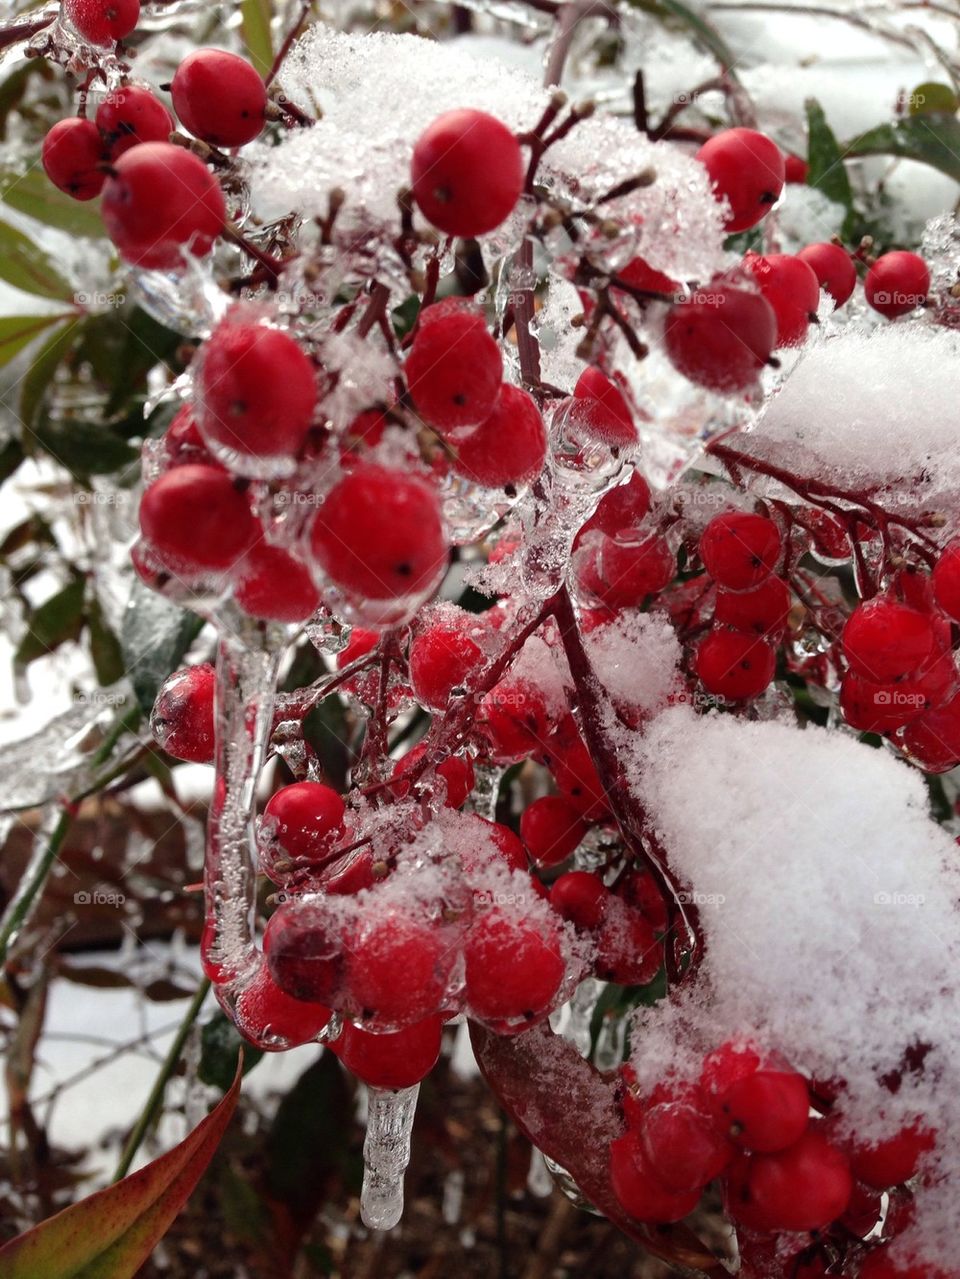 Frozen berries 